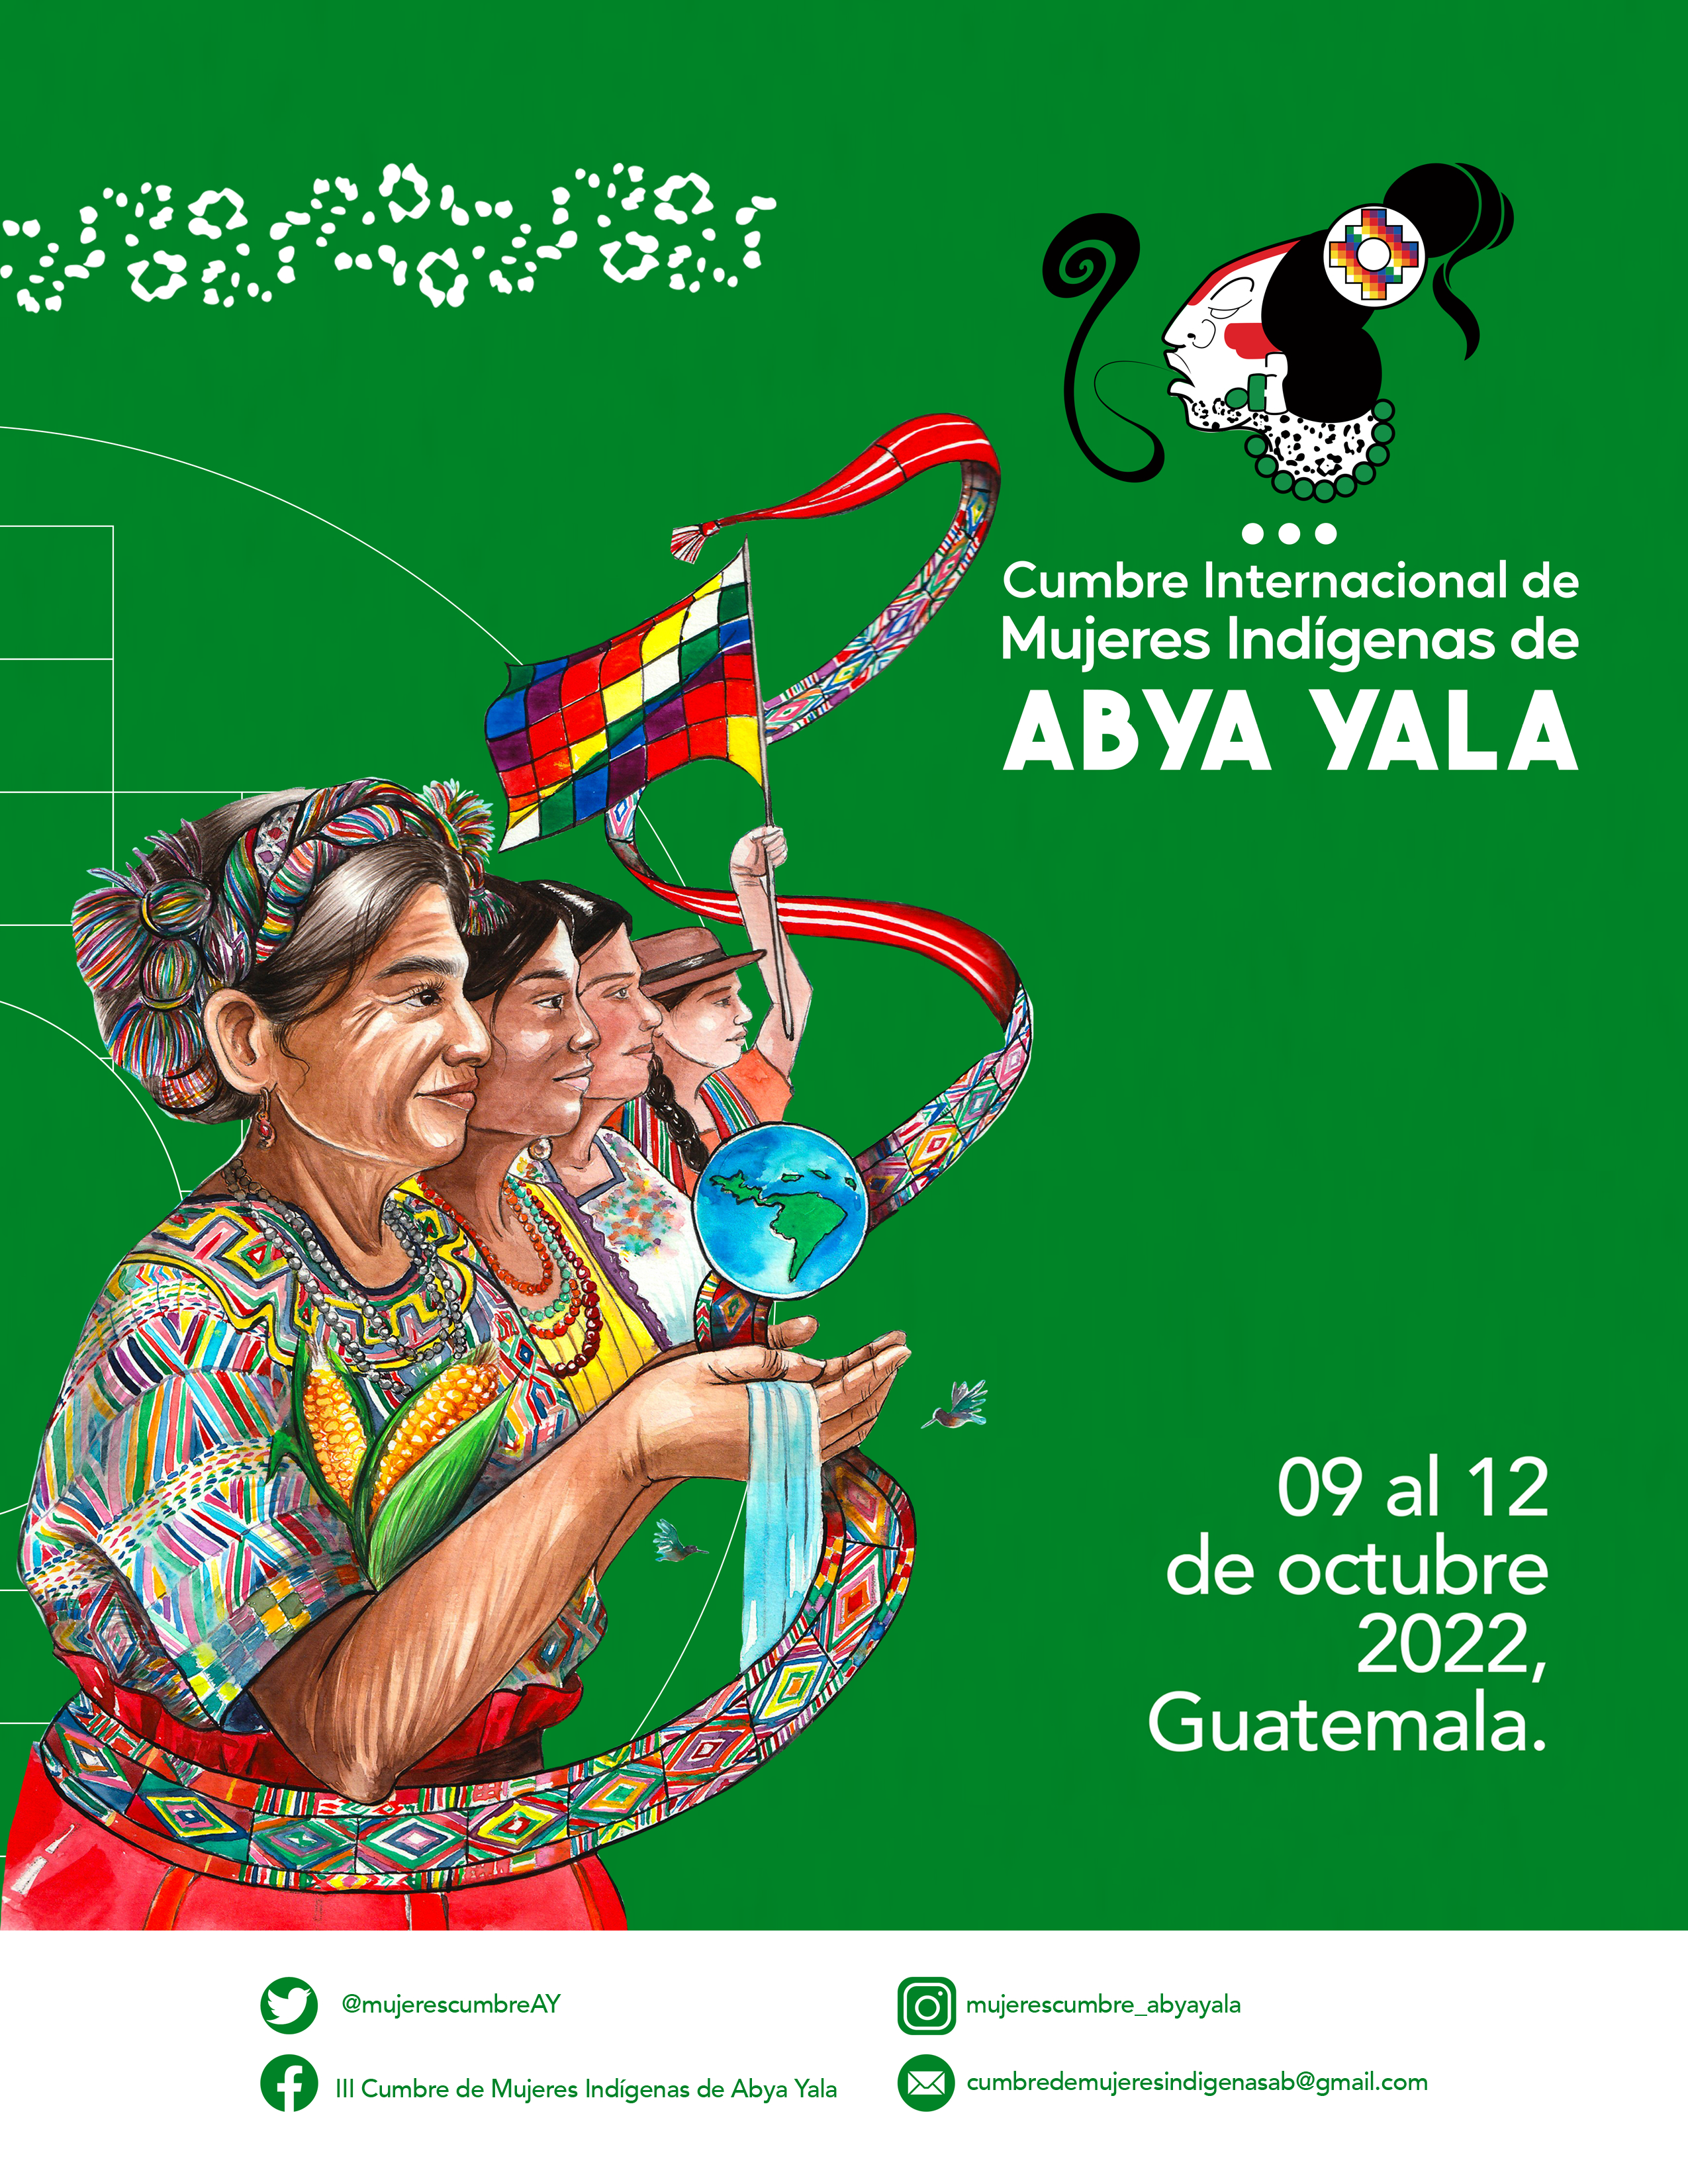 Cumbre Internacional de Mujeres Indígenas de Abya Yala